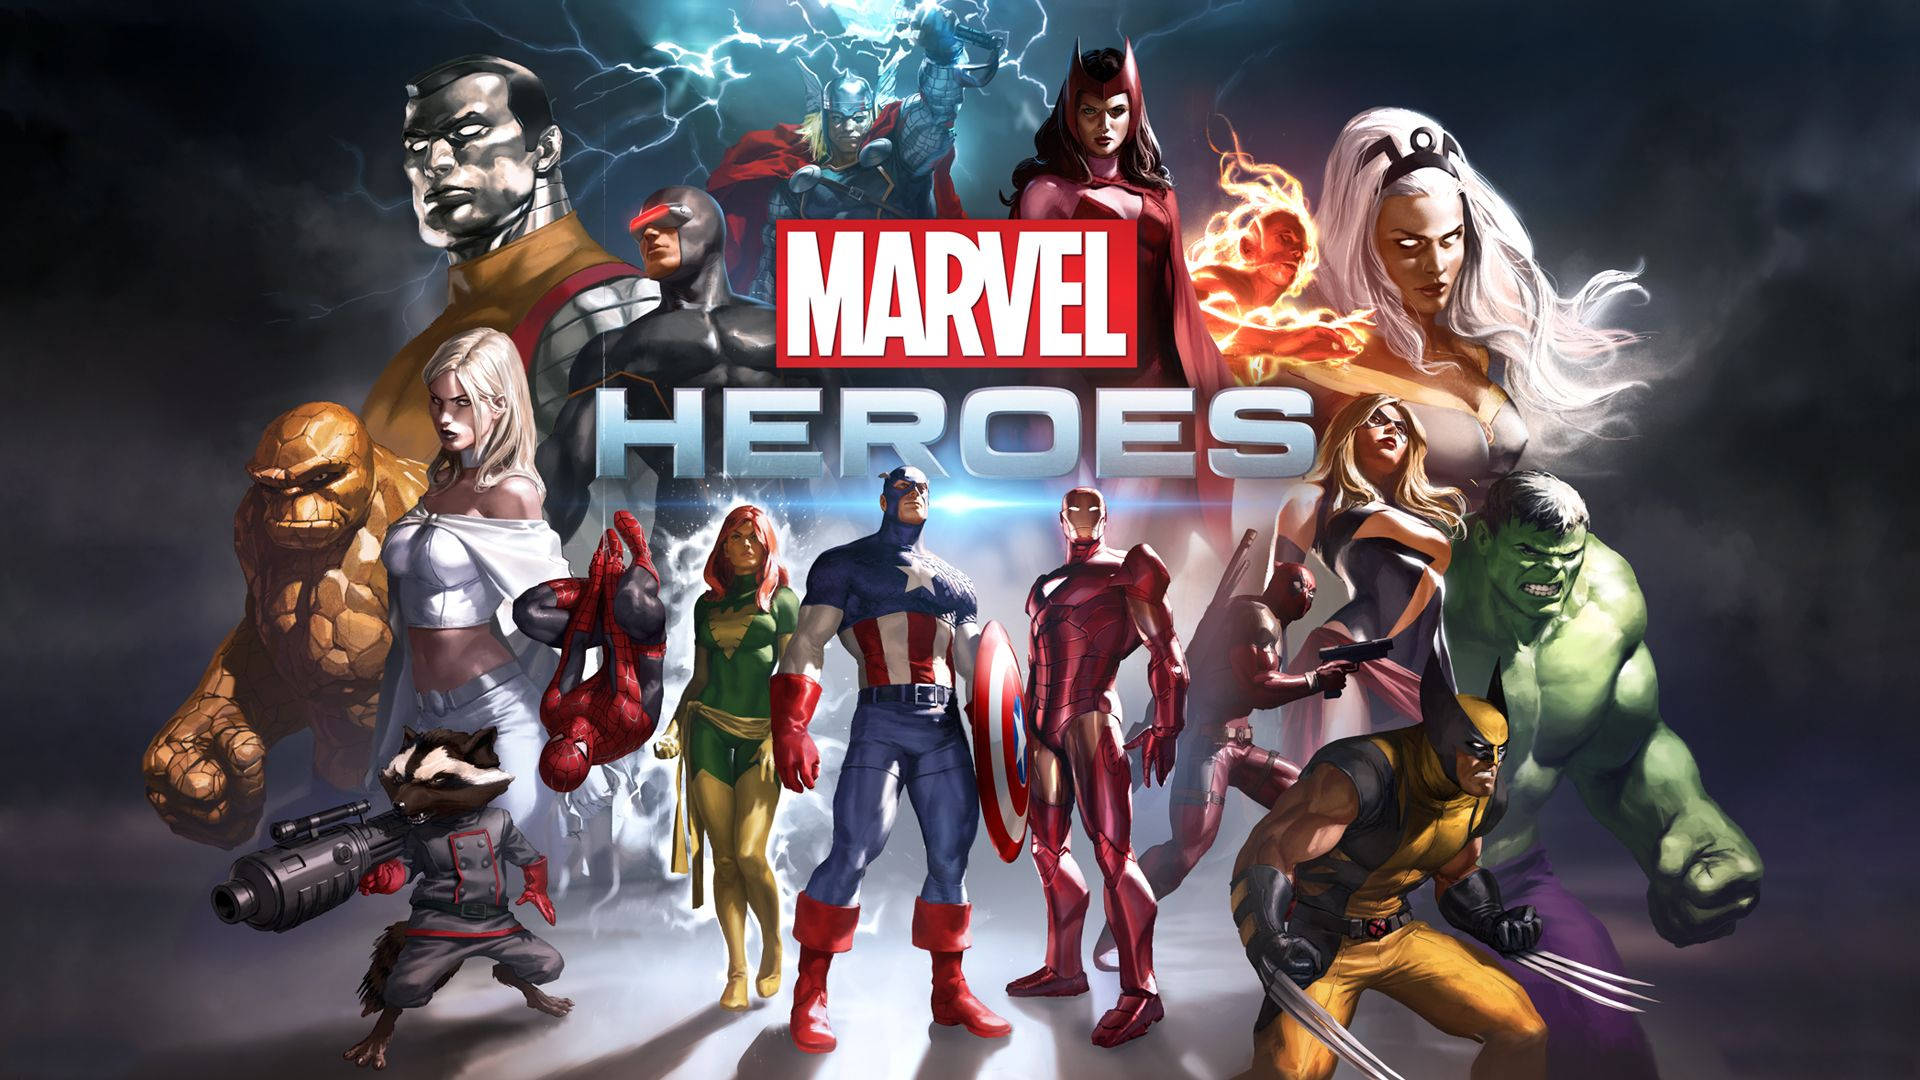 Upplevdet Episka Marvel-äventyret Med Avengers Videospel På Playstation 4 Genom Bilden. Wallpaper